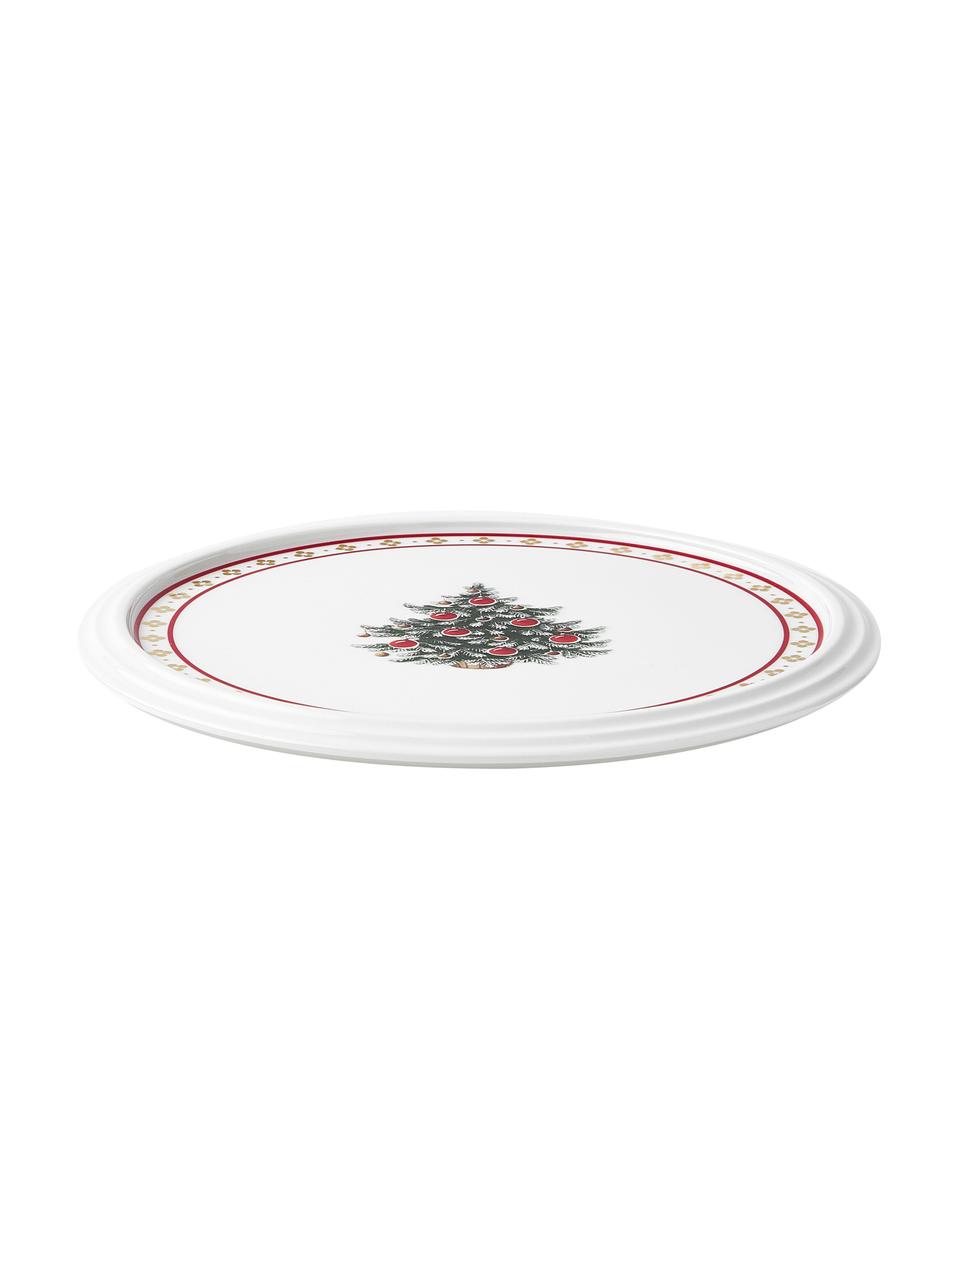 Sada nádobí s vánočním vzorem Delight, 7 dílů, Prémiový porcelán, Červená, bílá, se vzorem, Sada s různými velikostmi